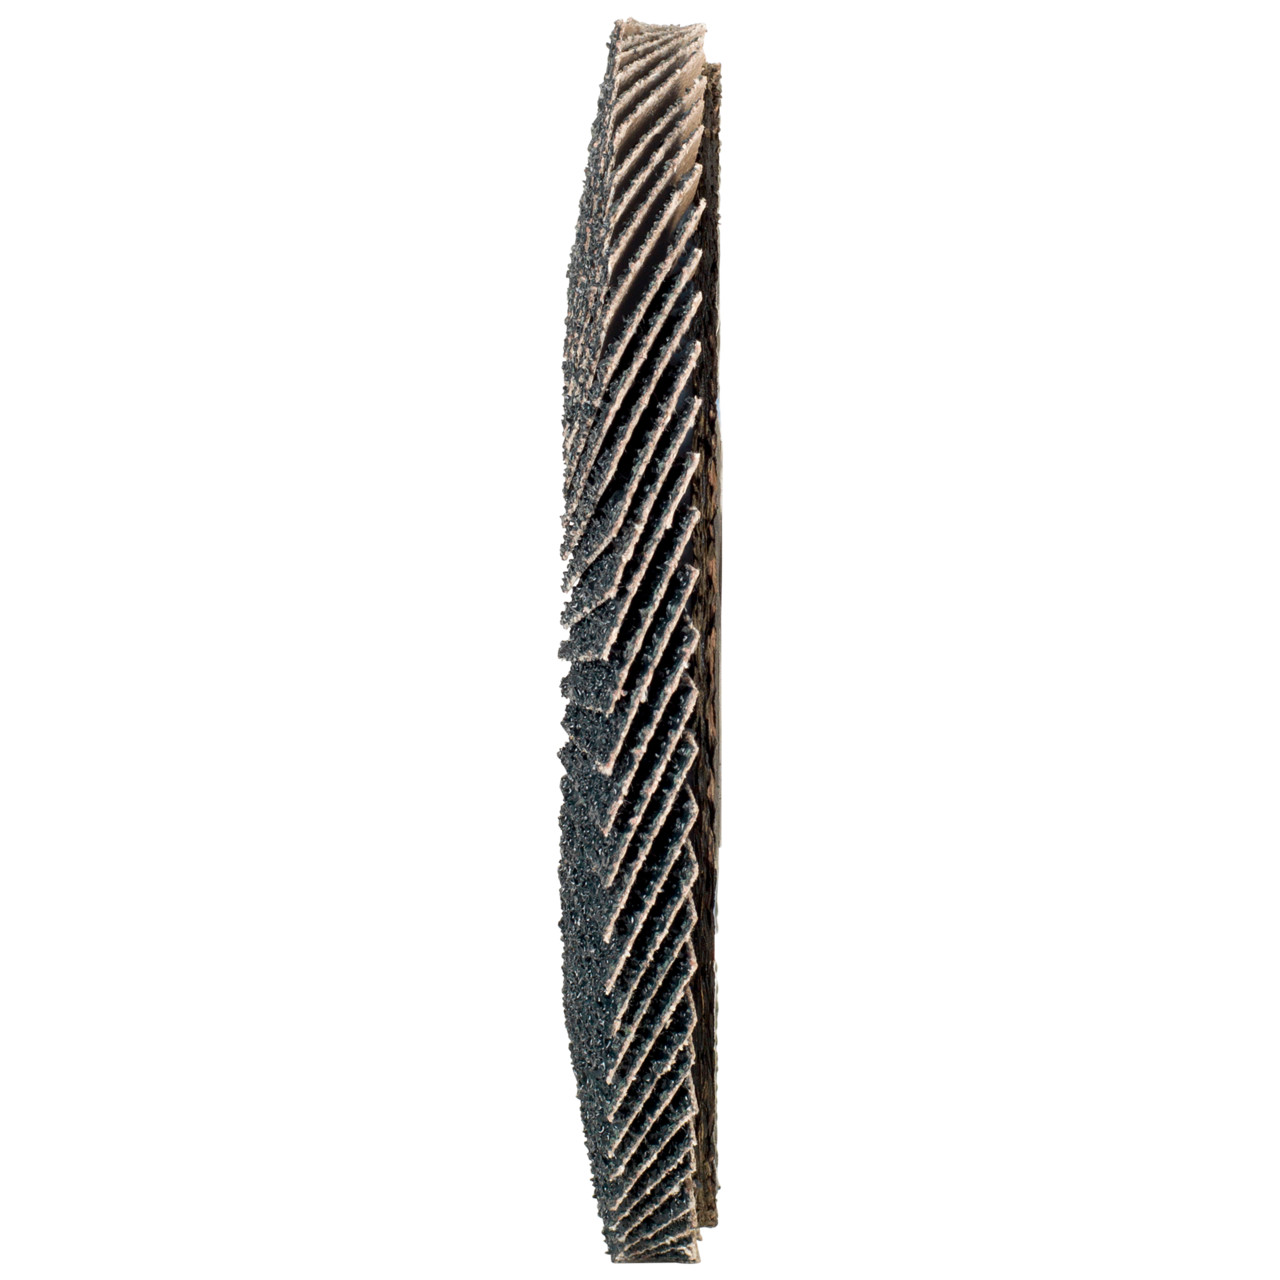 Rondella dentata Tyrolit DxH 178x22.2 2in1 per acciaio e acciaio inox, P40, forma: 28A - versione diritta (versione con corpo portante in fibra di vetro), Art. 668696